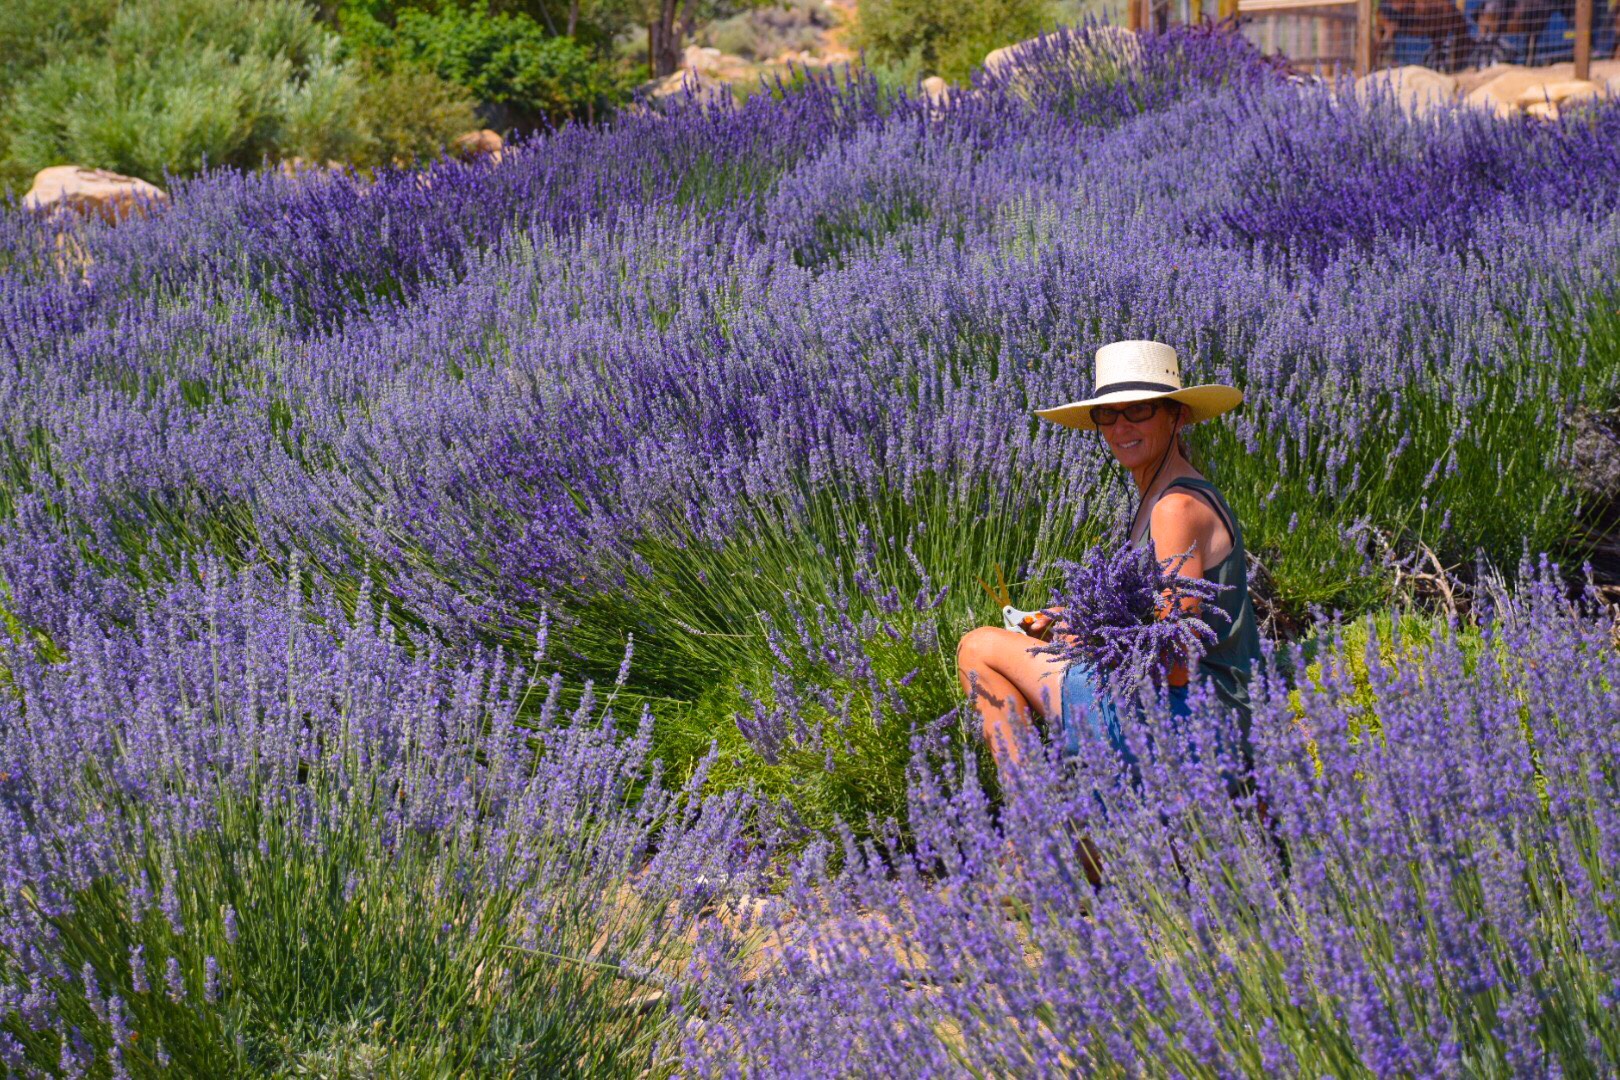 Julie picking lavender